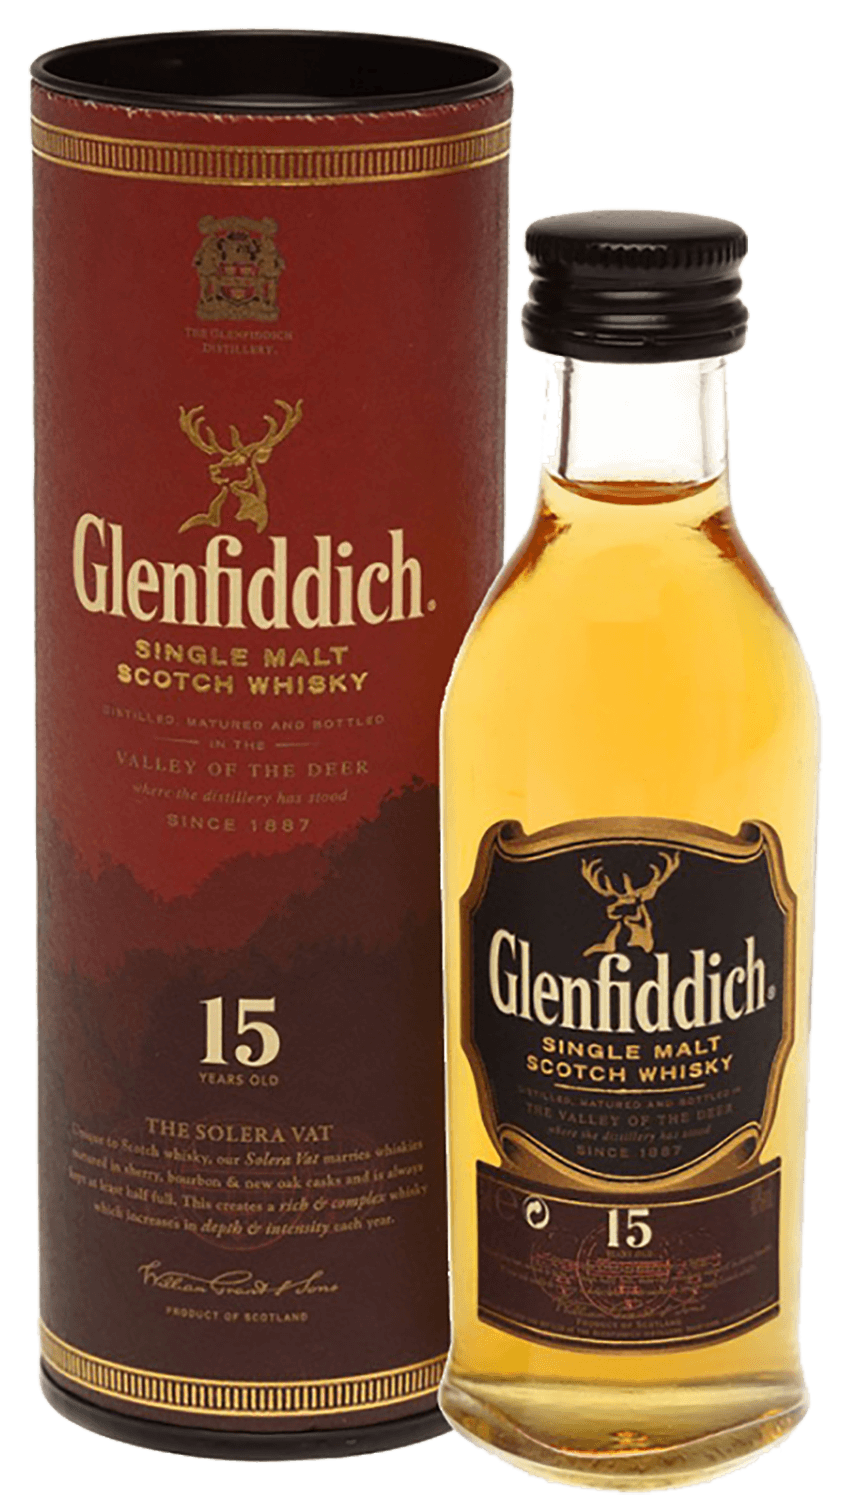 Glenfiddich Single Malt Scotch Whisky 15 y.o. (gift box) glenfiddich project хх single malt scotch whisky gift box